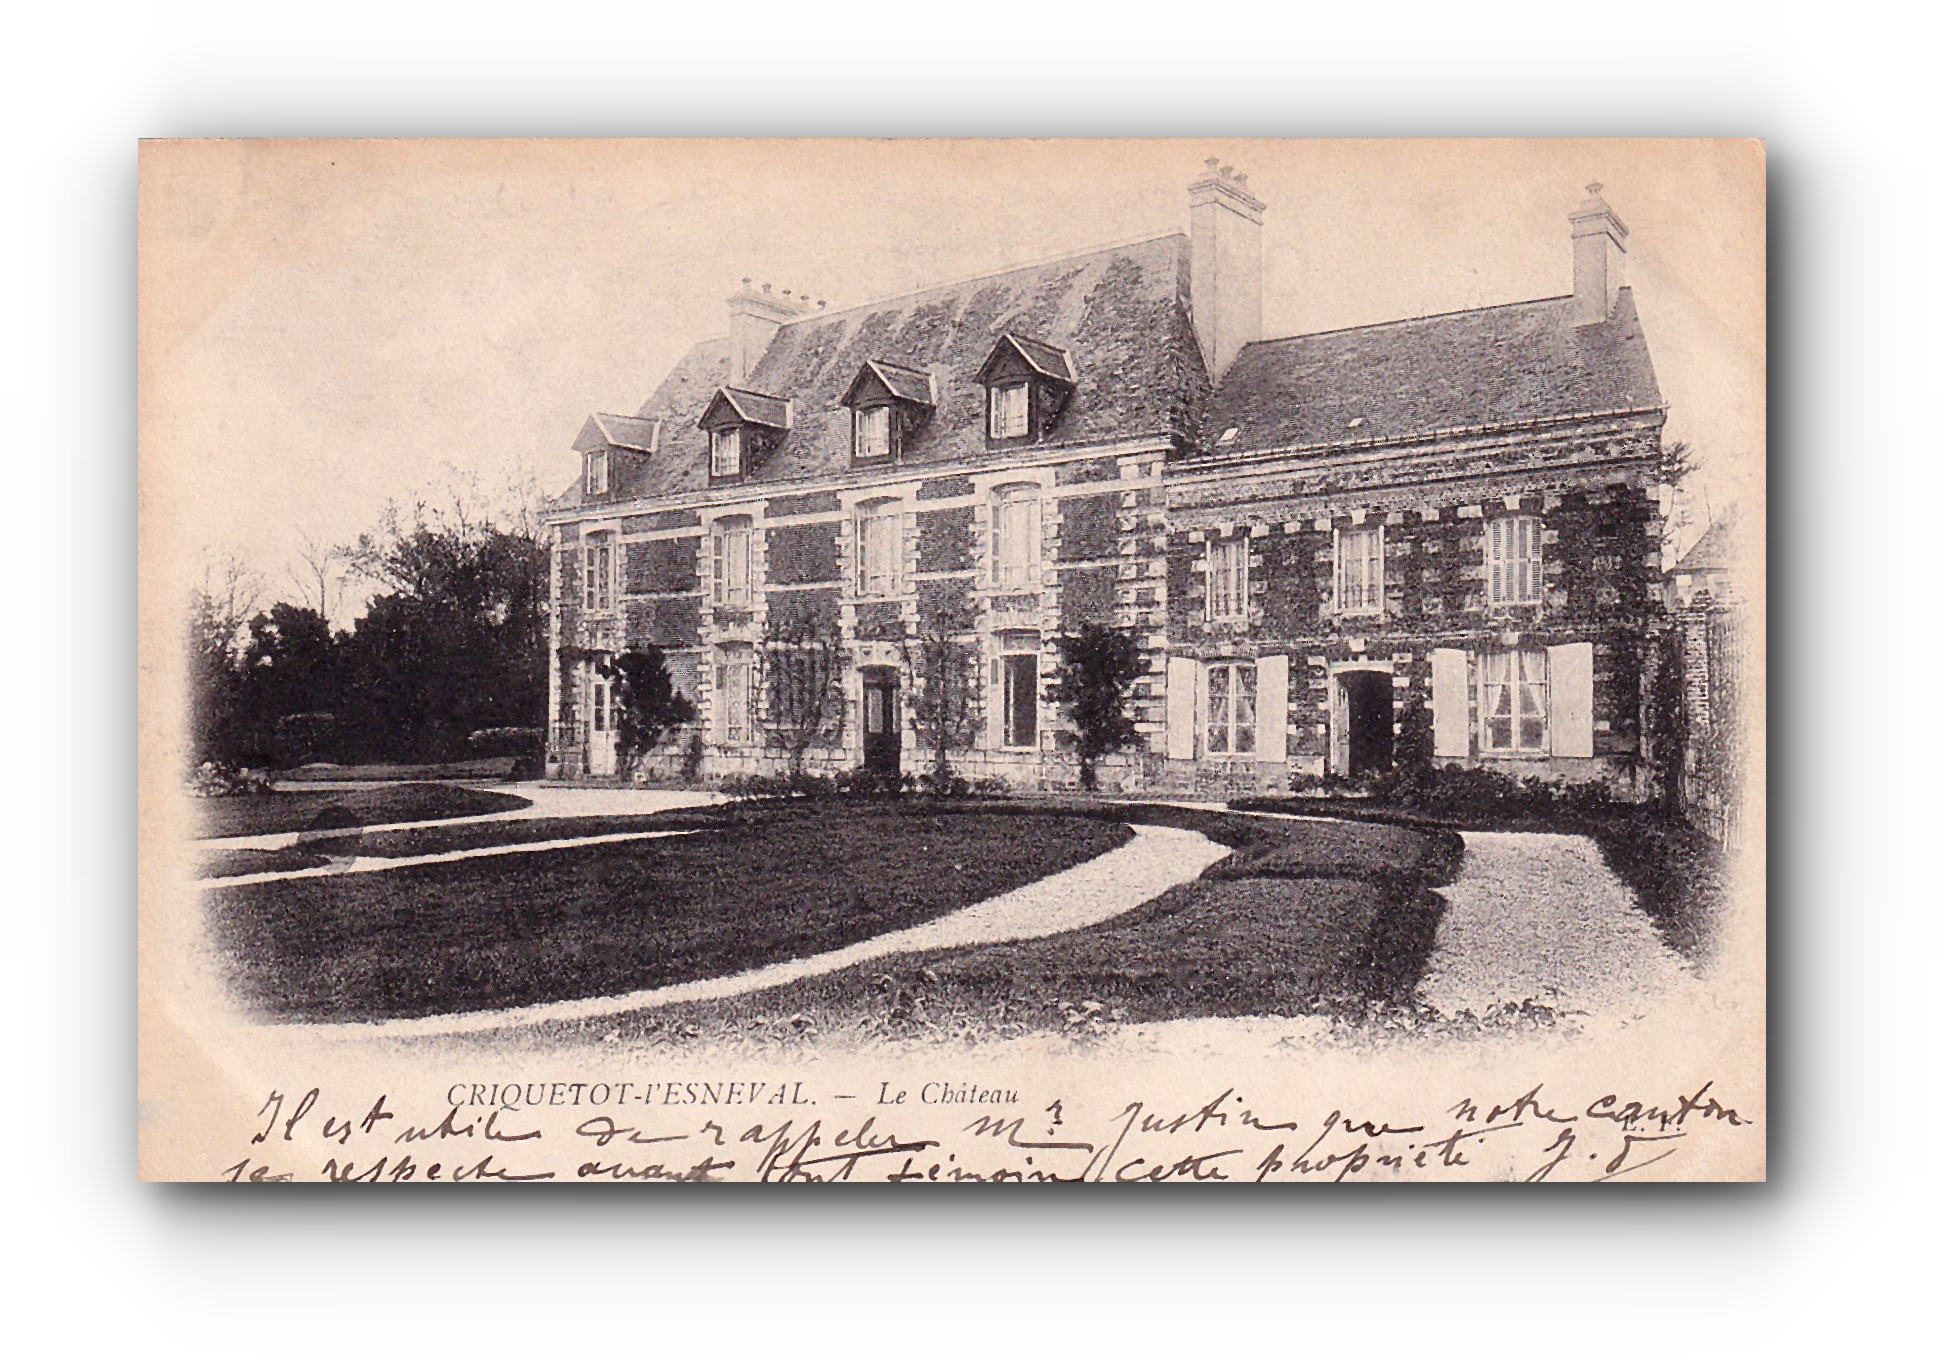 - Le Château - CRIQUETOT - l'ESNEVAL - 07.11.1903 -